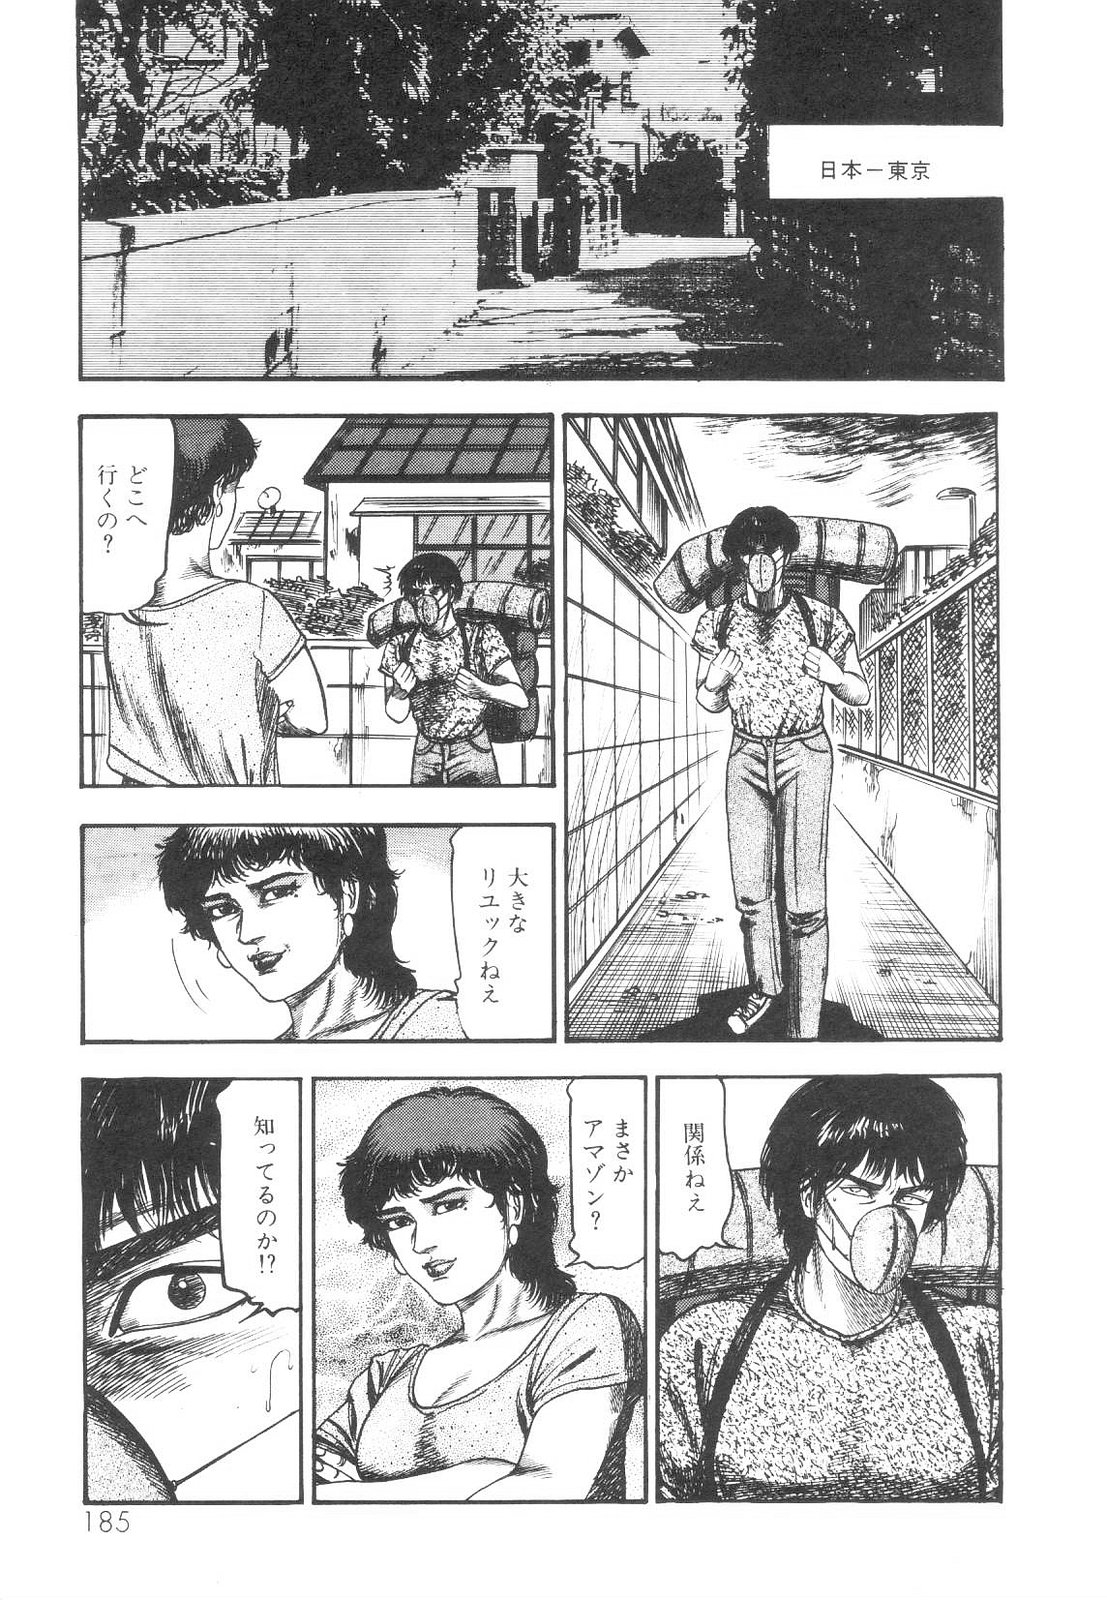 [Sanjou Tomomi] Shiro no Mokushiroku Vol. 1 - Sei Shojo Shion no Shou 185